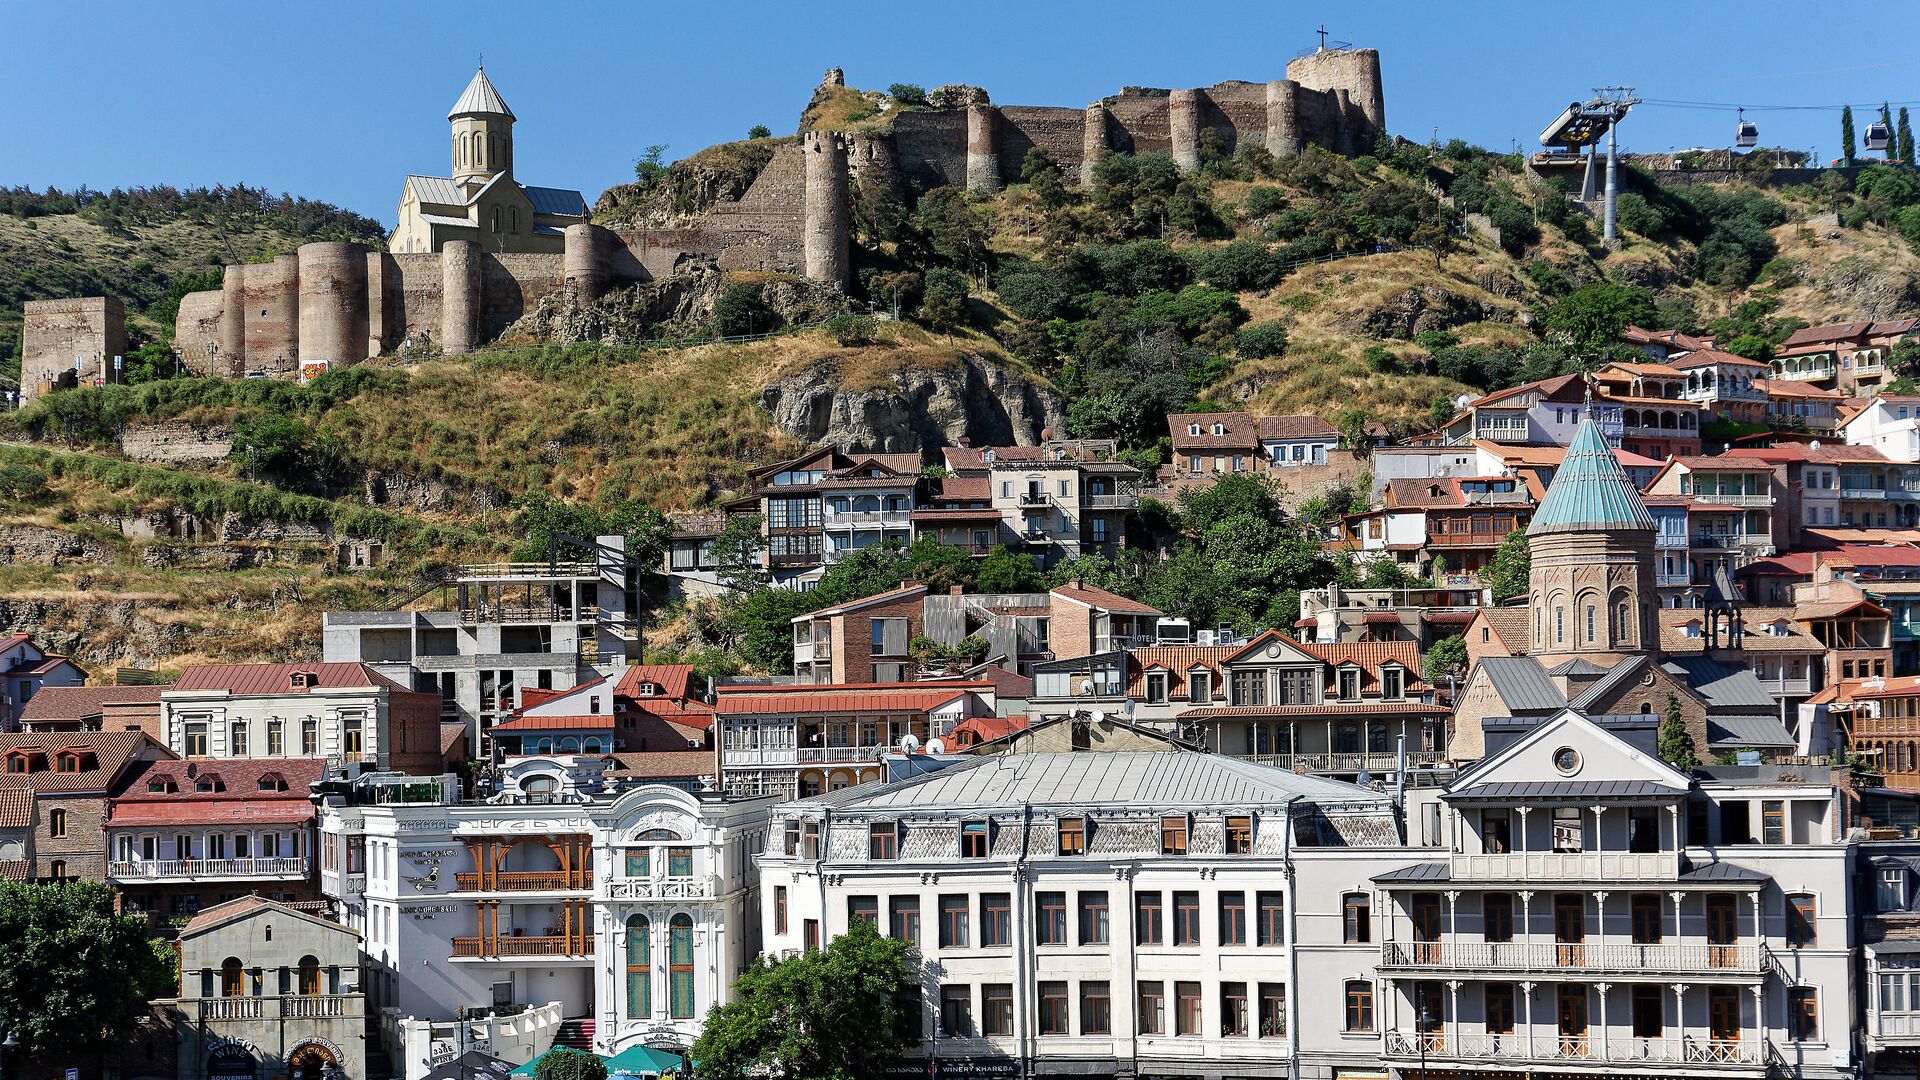 Вид на город Тбилиси - старый город, крепость Нарикала и Калаубани, церкви армянская и грузинская - Sputnik Грузия, 1920, 19.09.2021